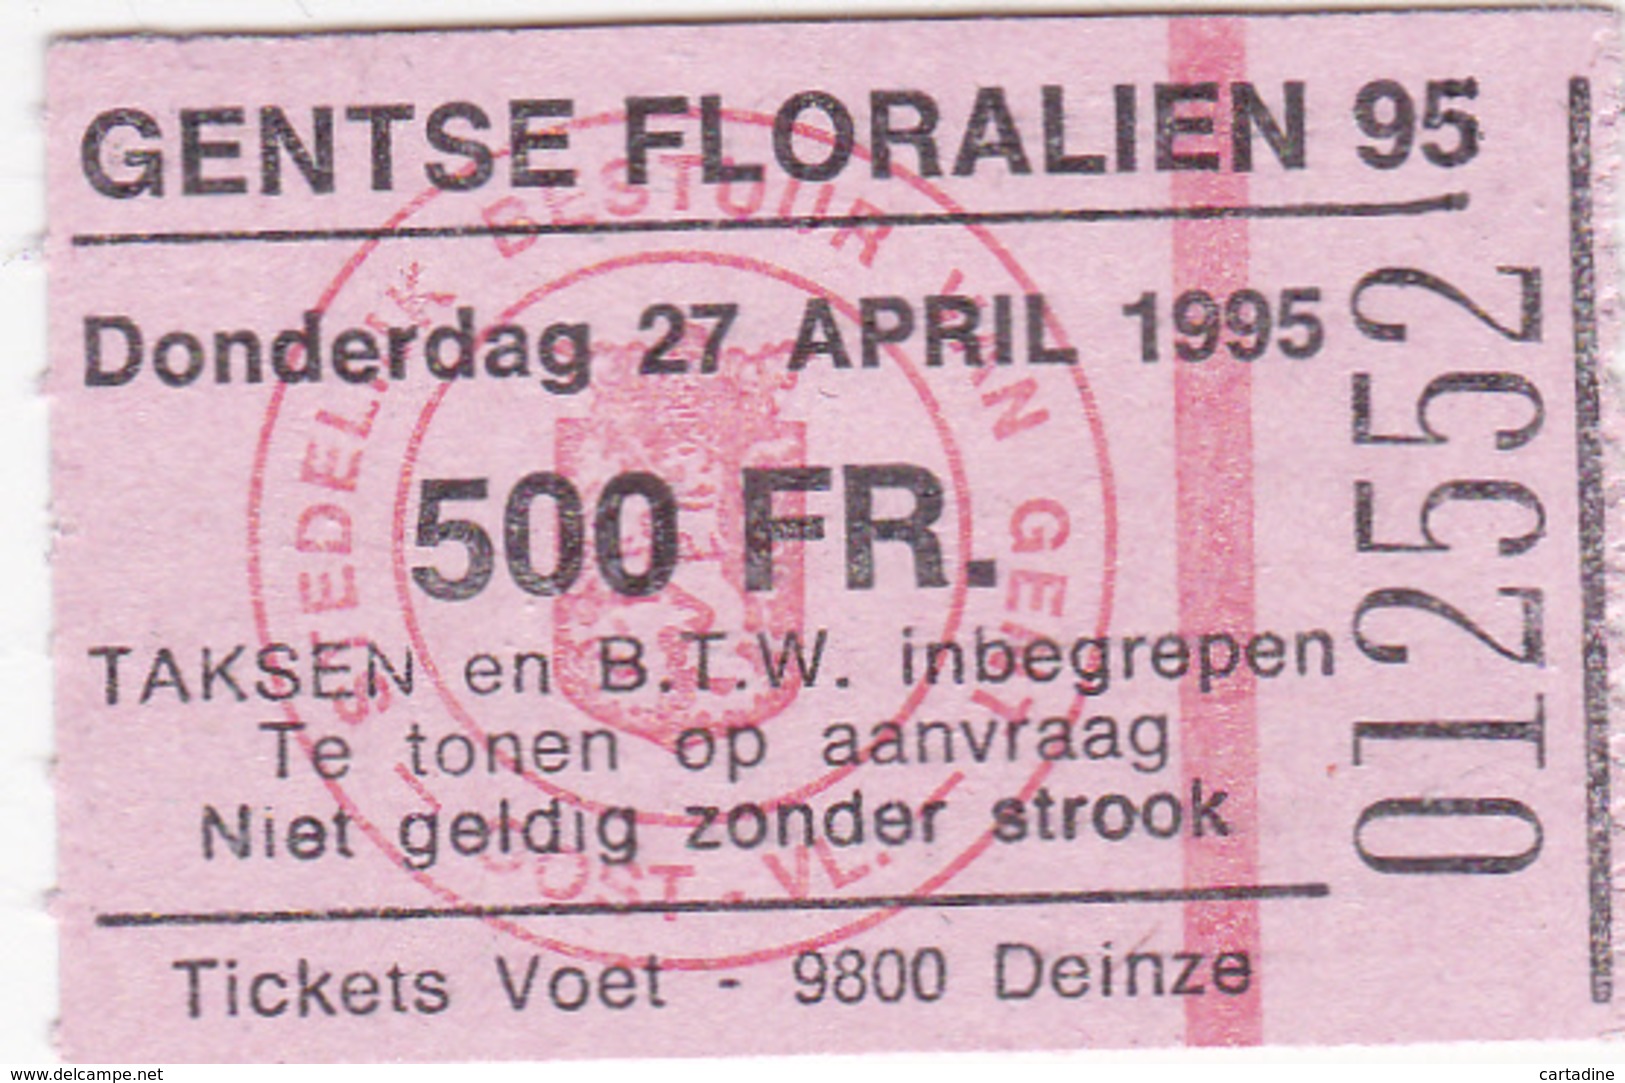 Feuillet sur soie/op zijde - Floralies Gantoises IX - André Buzin - Timbres n° 2589/91 - + ticket d'entrée